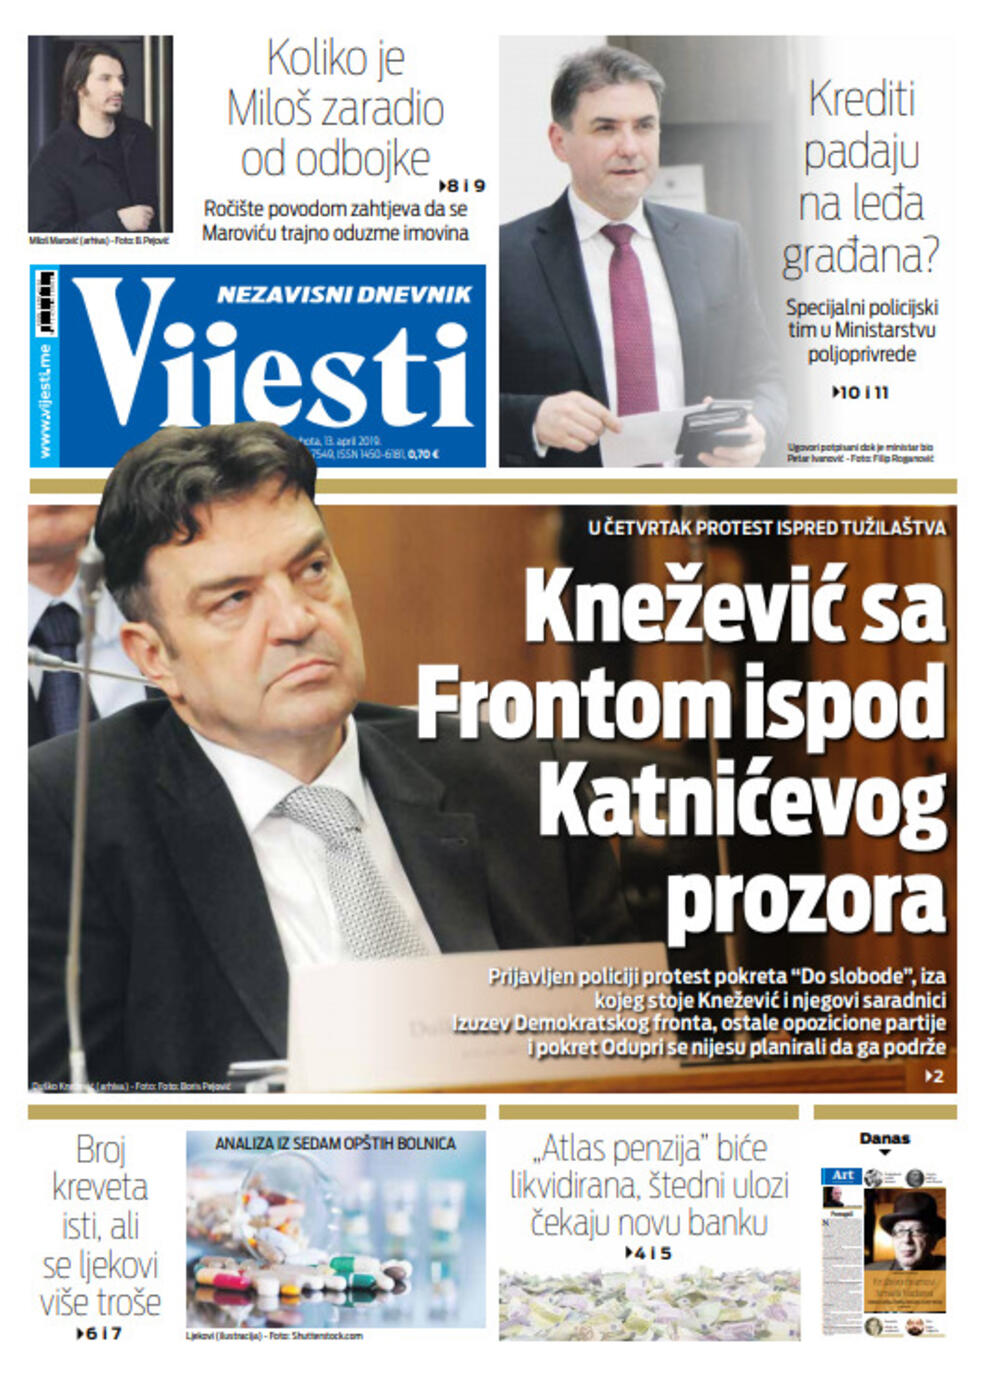 Naslovna strana "Vijesti" za 13. april, Foto: "Vijesti"